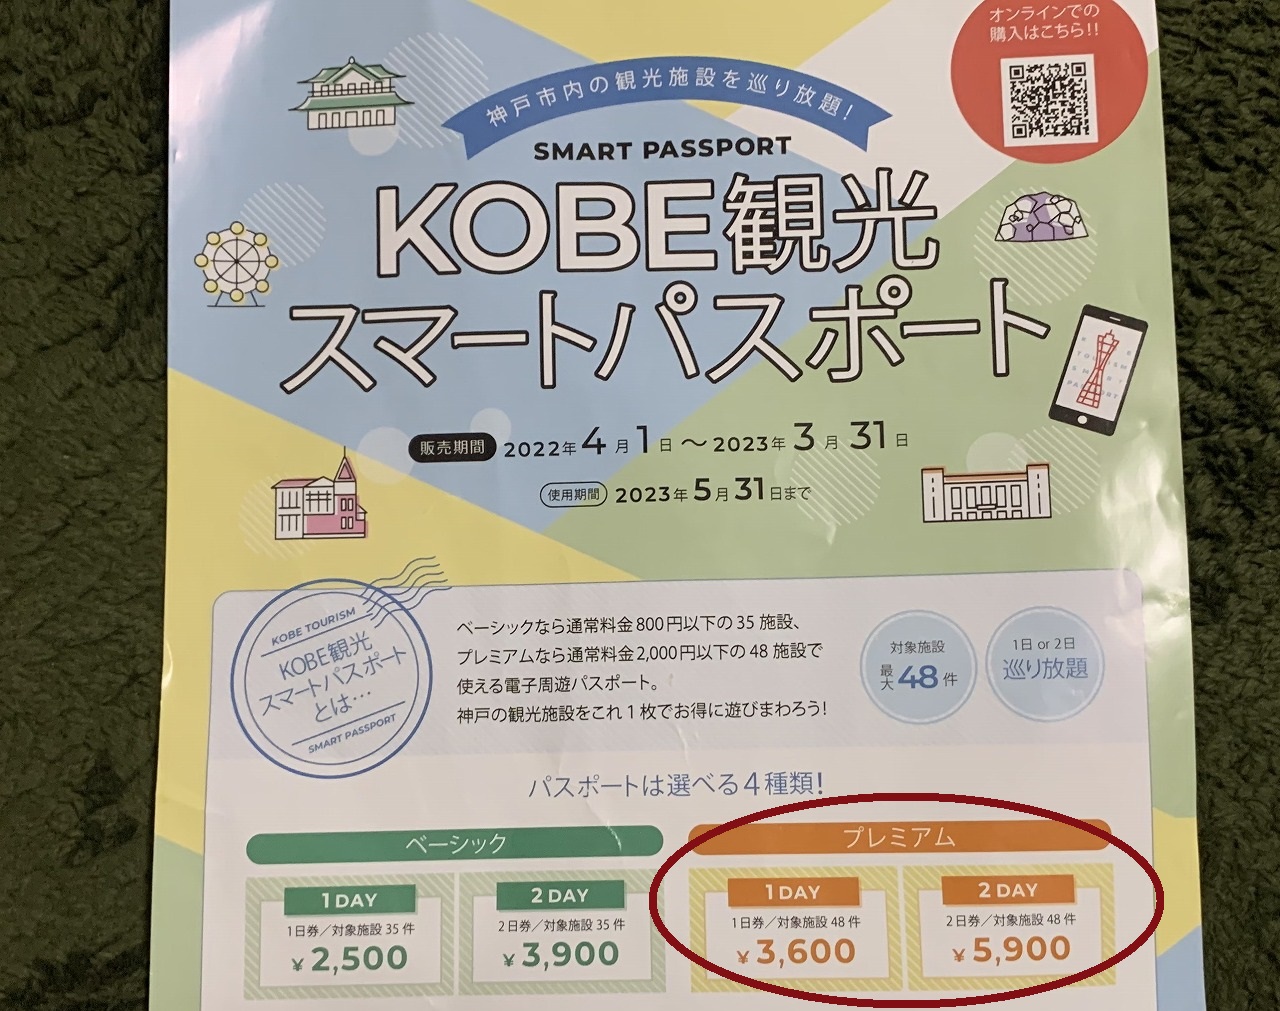 神戸市】『ぐるり旅KOBE』2022年5月14日から発売開始♪ 通常でもお得な「KOBE観光スマートパスポート」がなんと半額に！ | 号外NET 神戸 市灘区・東灘区